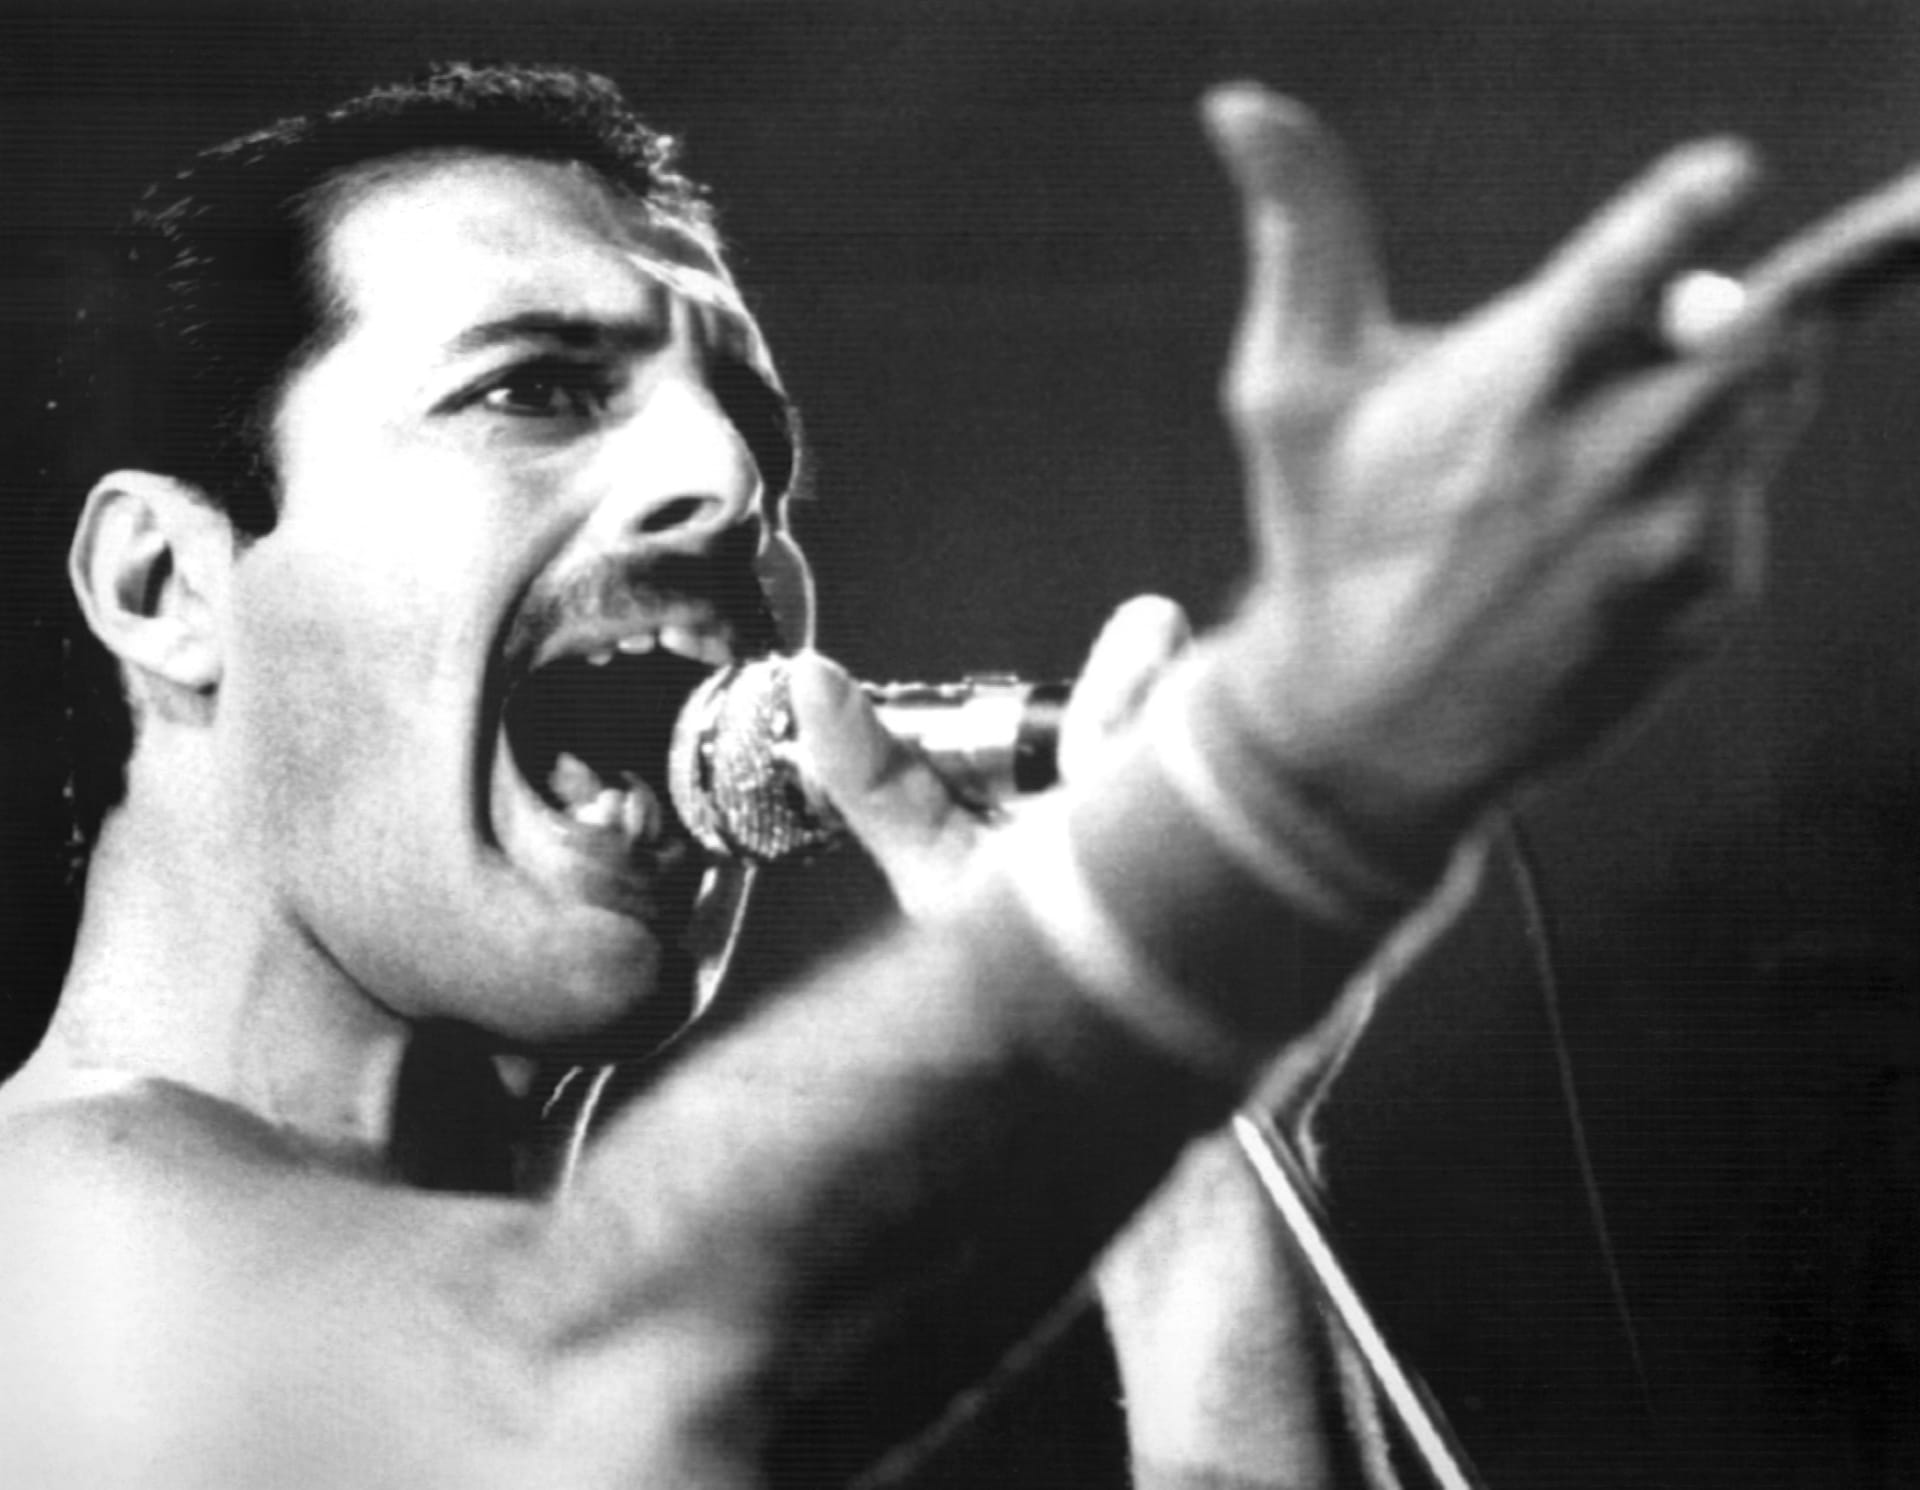 Freddie Mercury byl nadaný skladatel, originální umělec a zpěvák skupiny Queen.